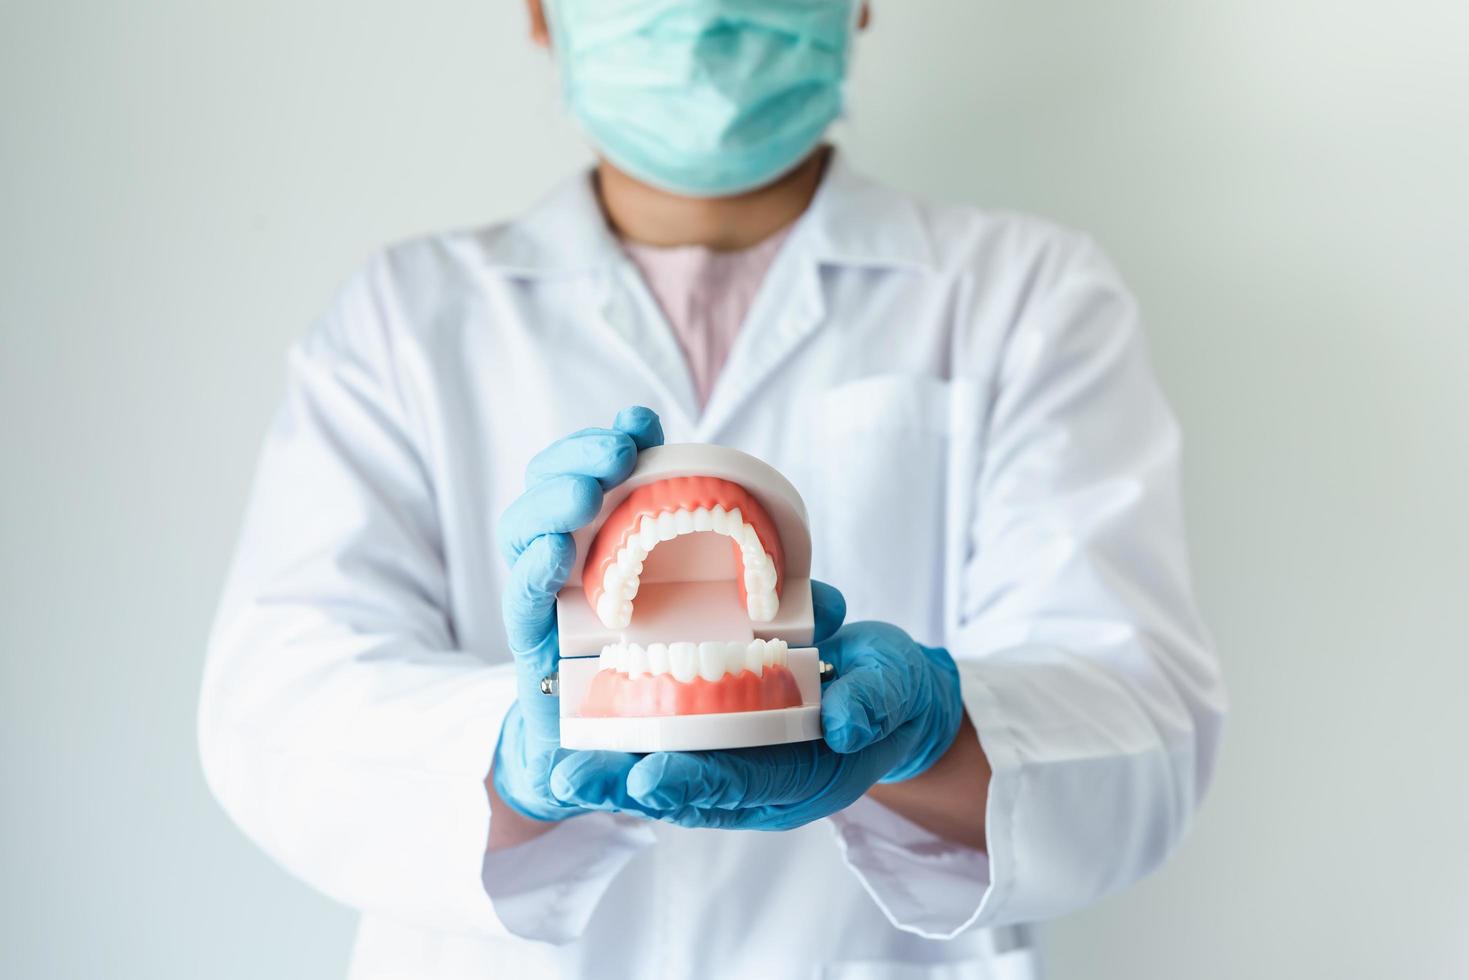 primo piano del medico dentale ortodontico foto